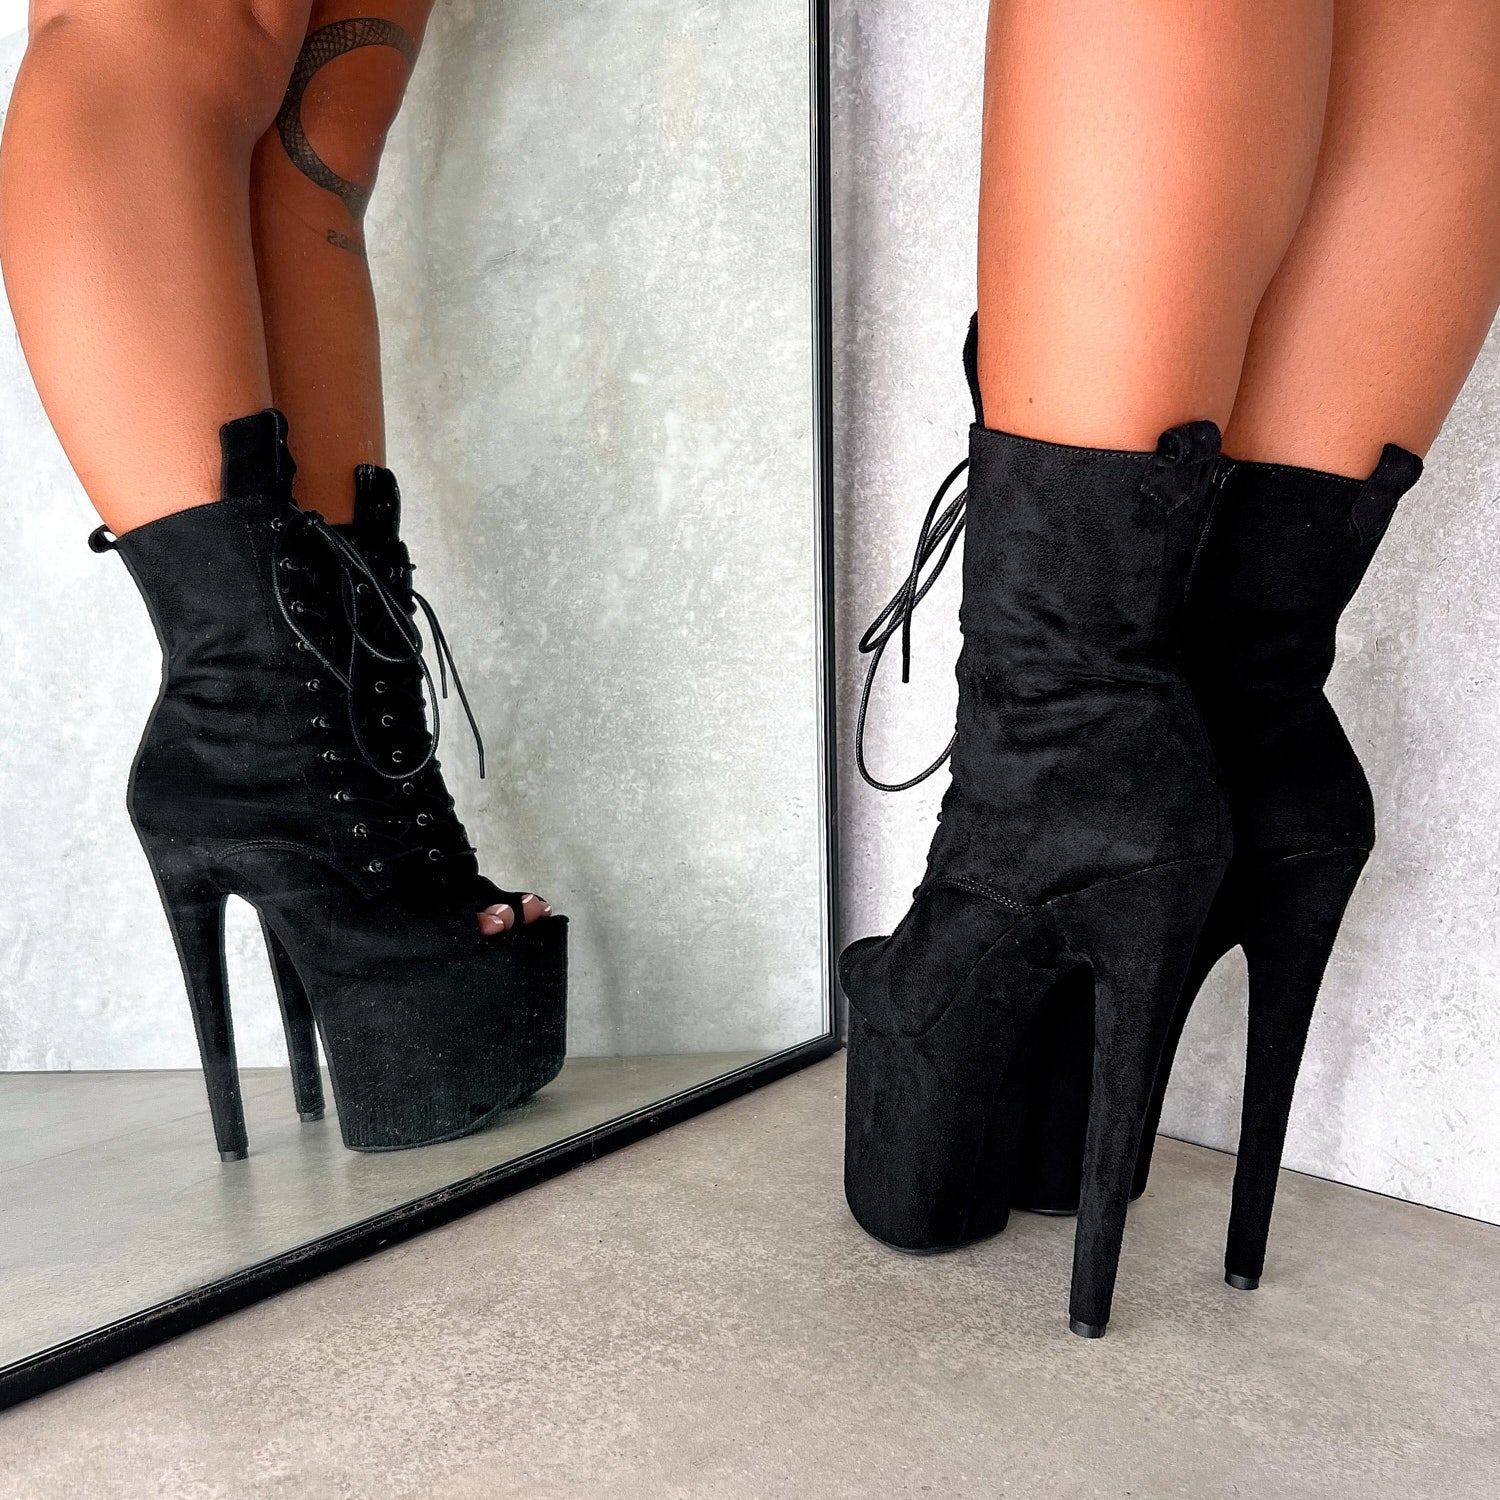 BabyDoll Black Open Toe Wide Fit - 8 INCH, stripper shoe, stripper heel, pole heel, not a pleaser, platform, dancer, pole dance, floor work